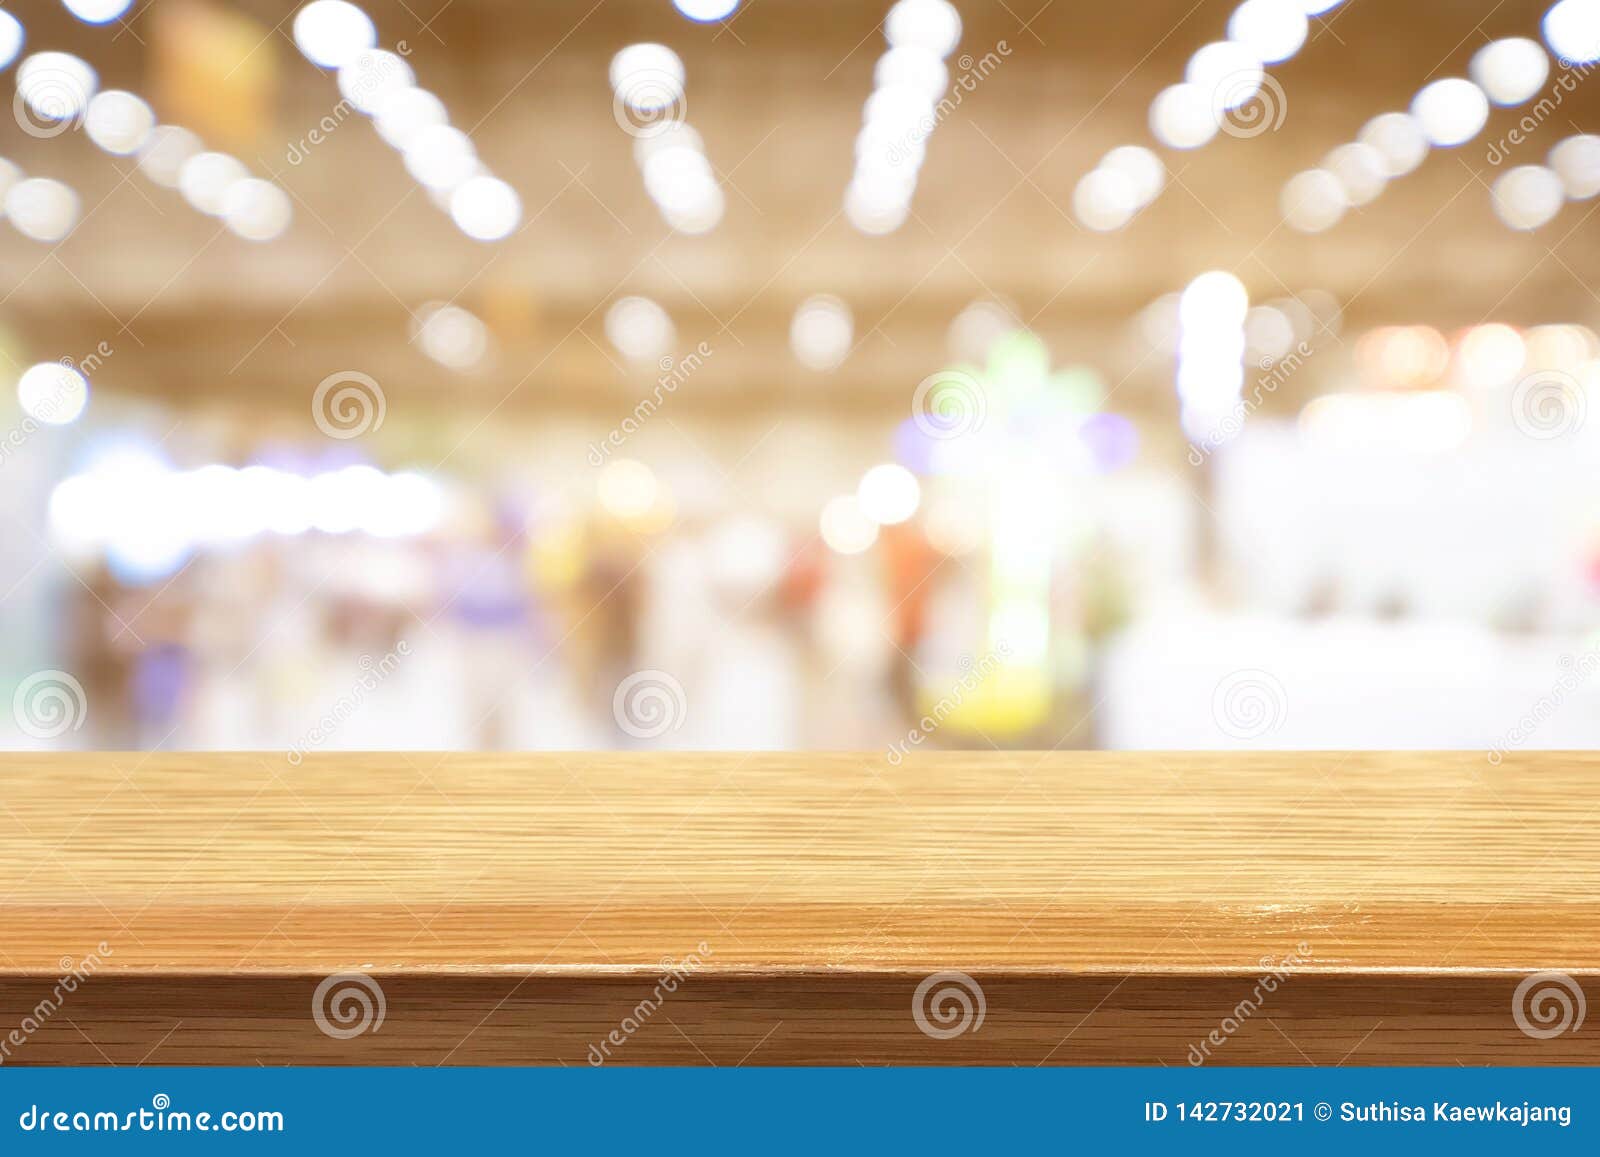 Bàn gỗ với kiểu dáng đẹp mắt chắc chắn sẽ thu hút sự chú ý của bạn đến hình ảnh mà chúng tôi chia sẻ. Hãy khám phá bàn gỗ đó và tìm kiếm cảm giác ấm cúng khi bạn ngồi ăn tối với gia đình!